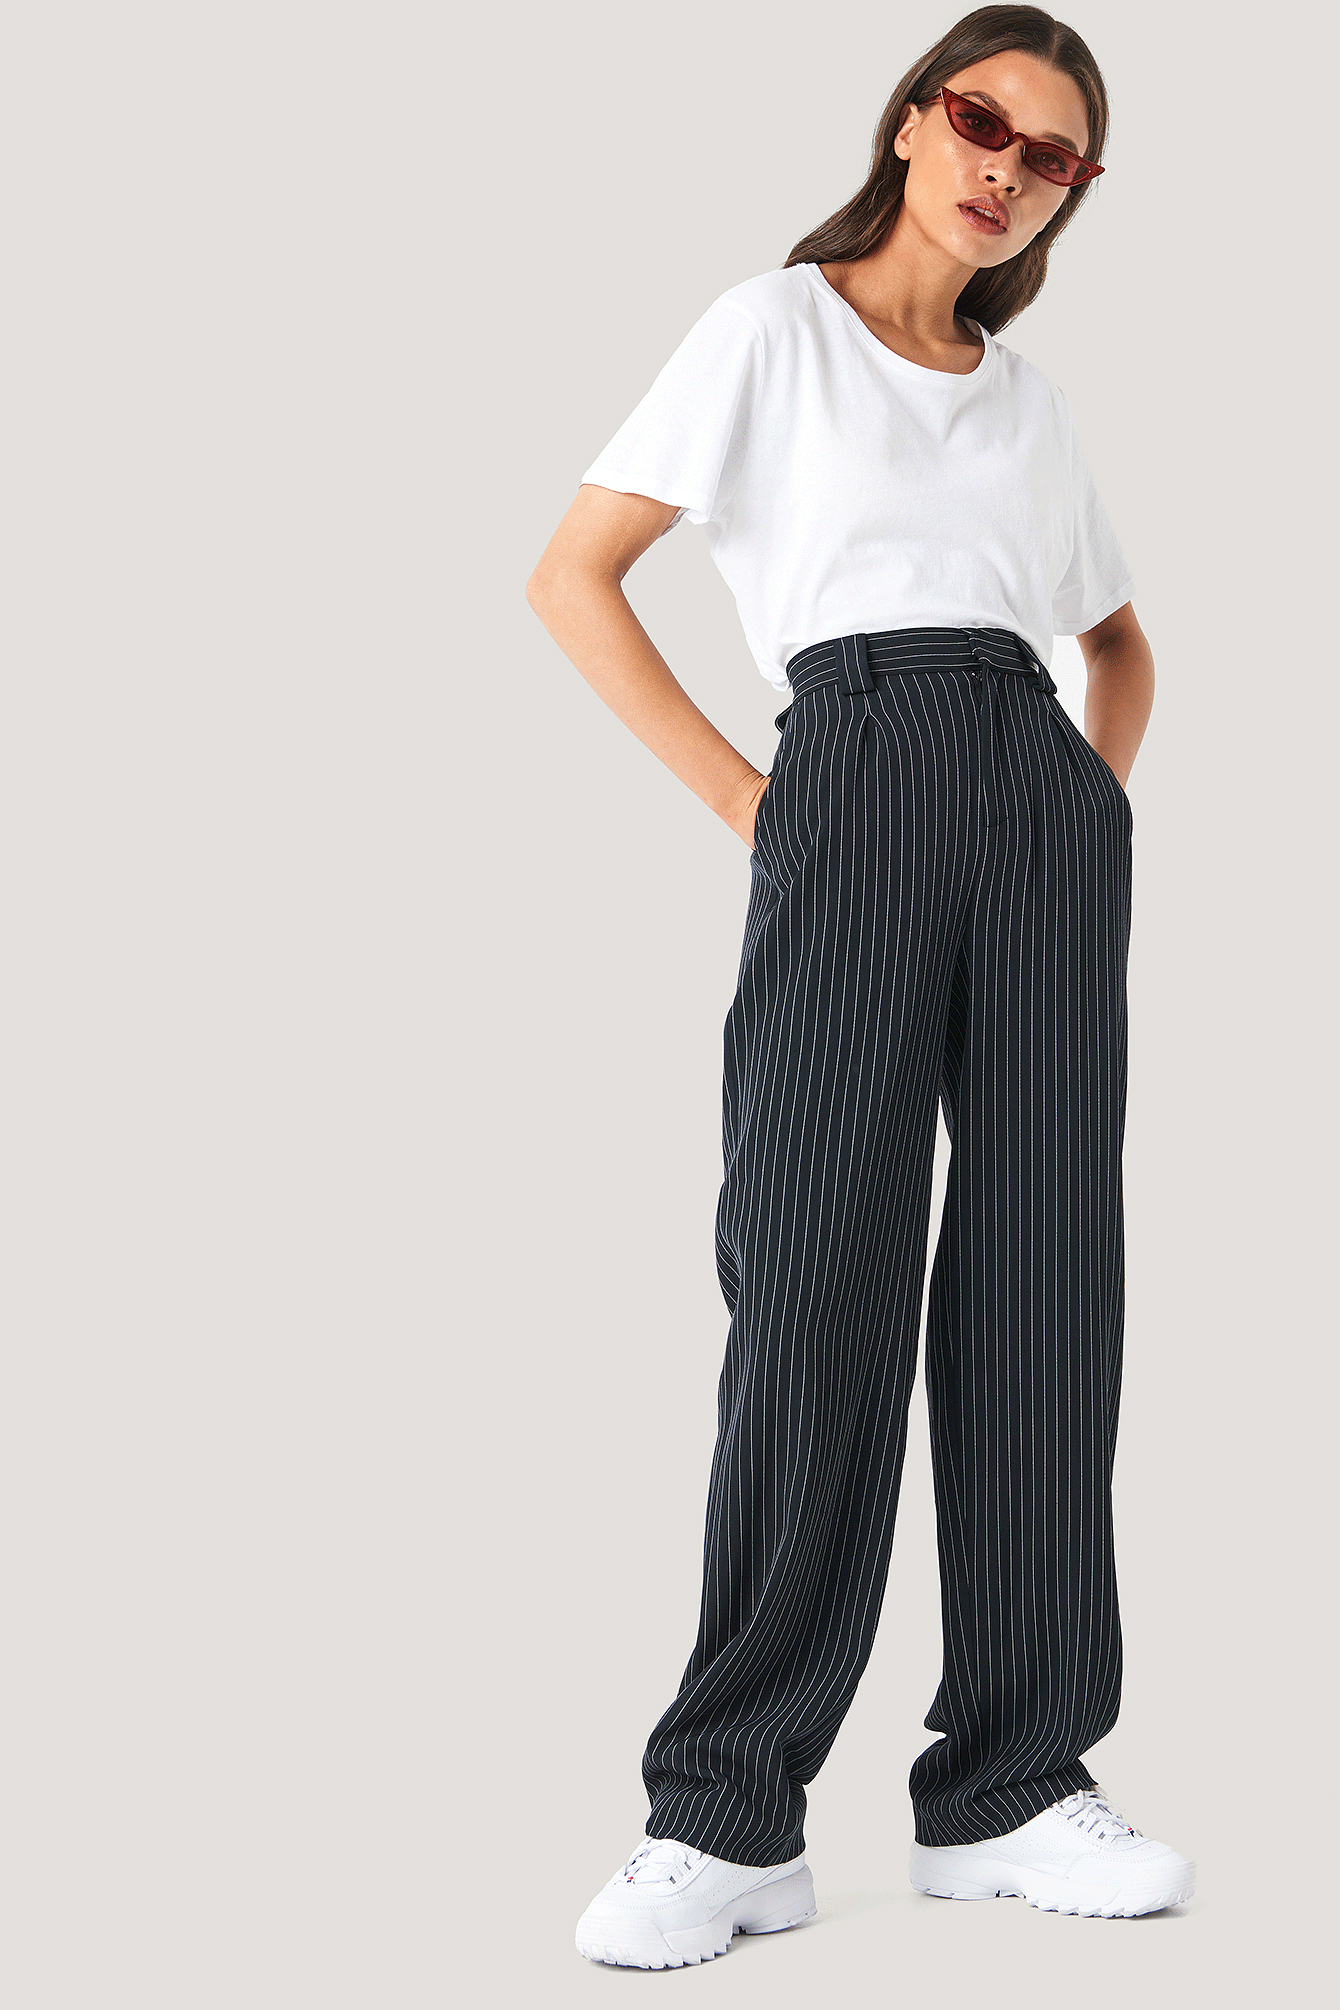 Pinstripe Pants NA-KD.COM  Pinstripe pants outfit, Stripe pants